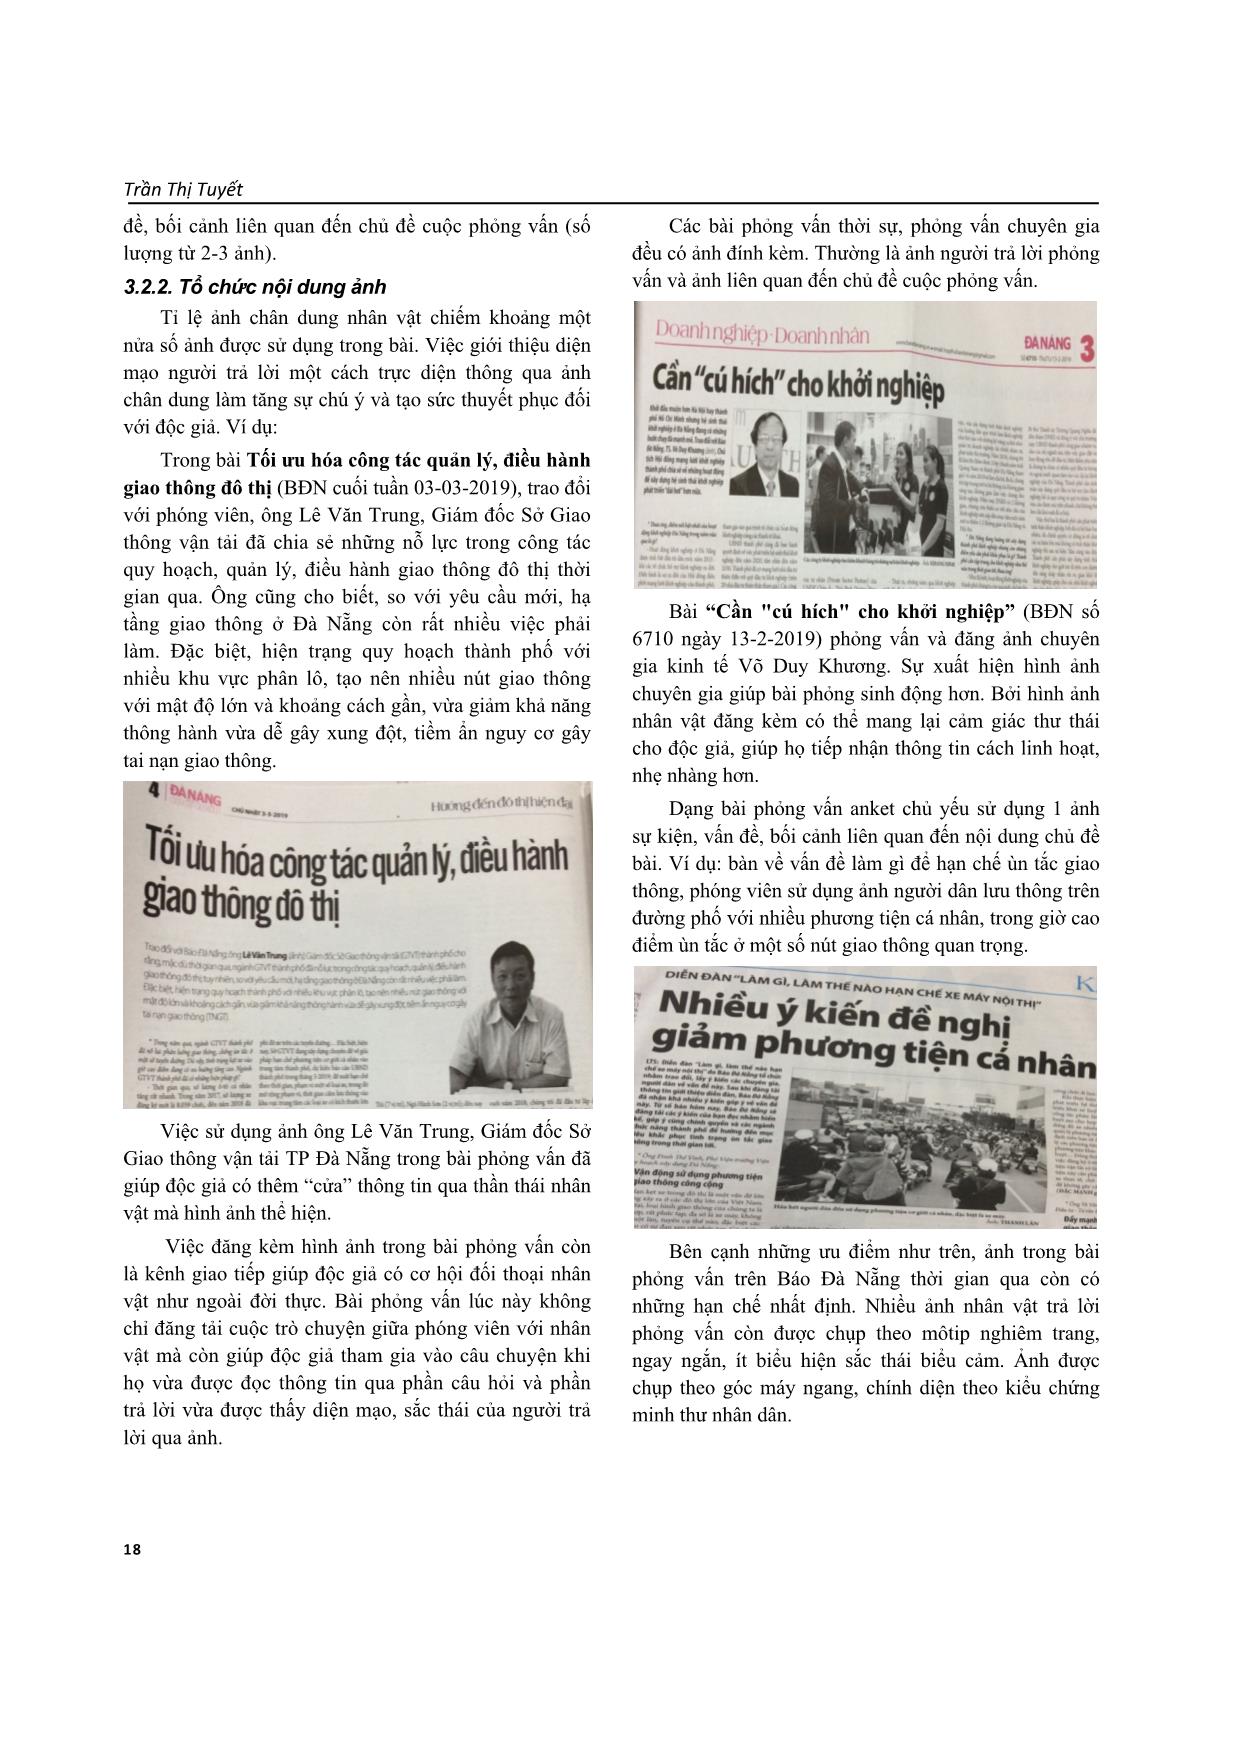 Thông tin bổ trợ ở box và ảnh trong tác phẩm phỏng vấn trên báo Đà Nẵng trang 7